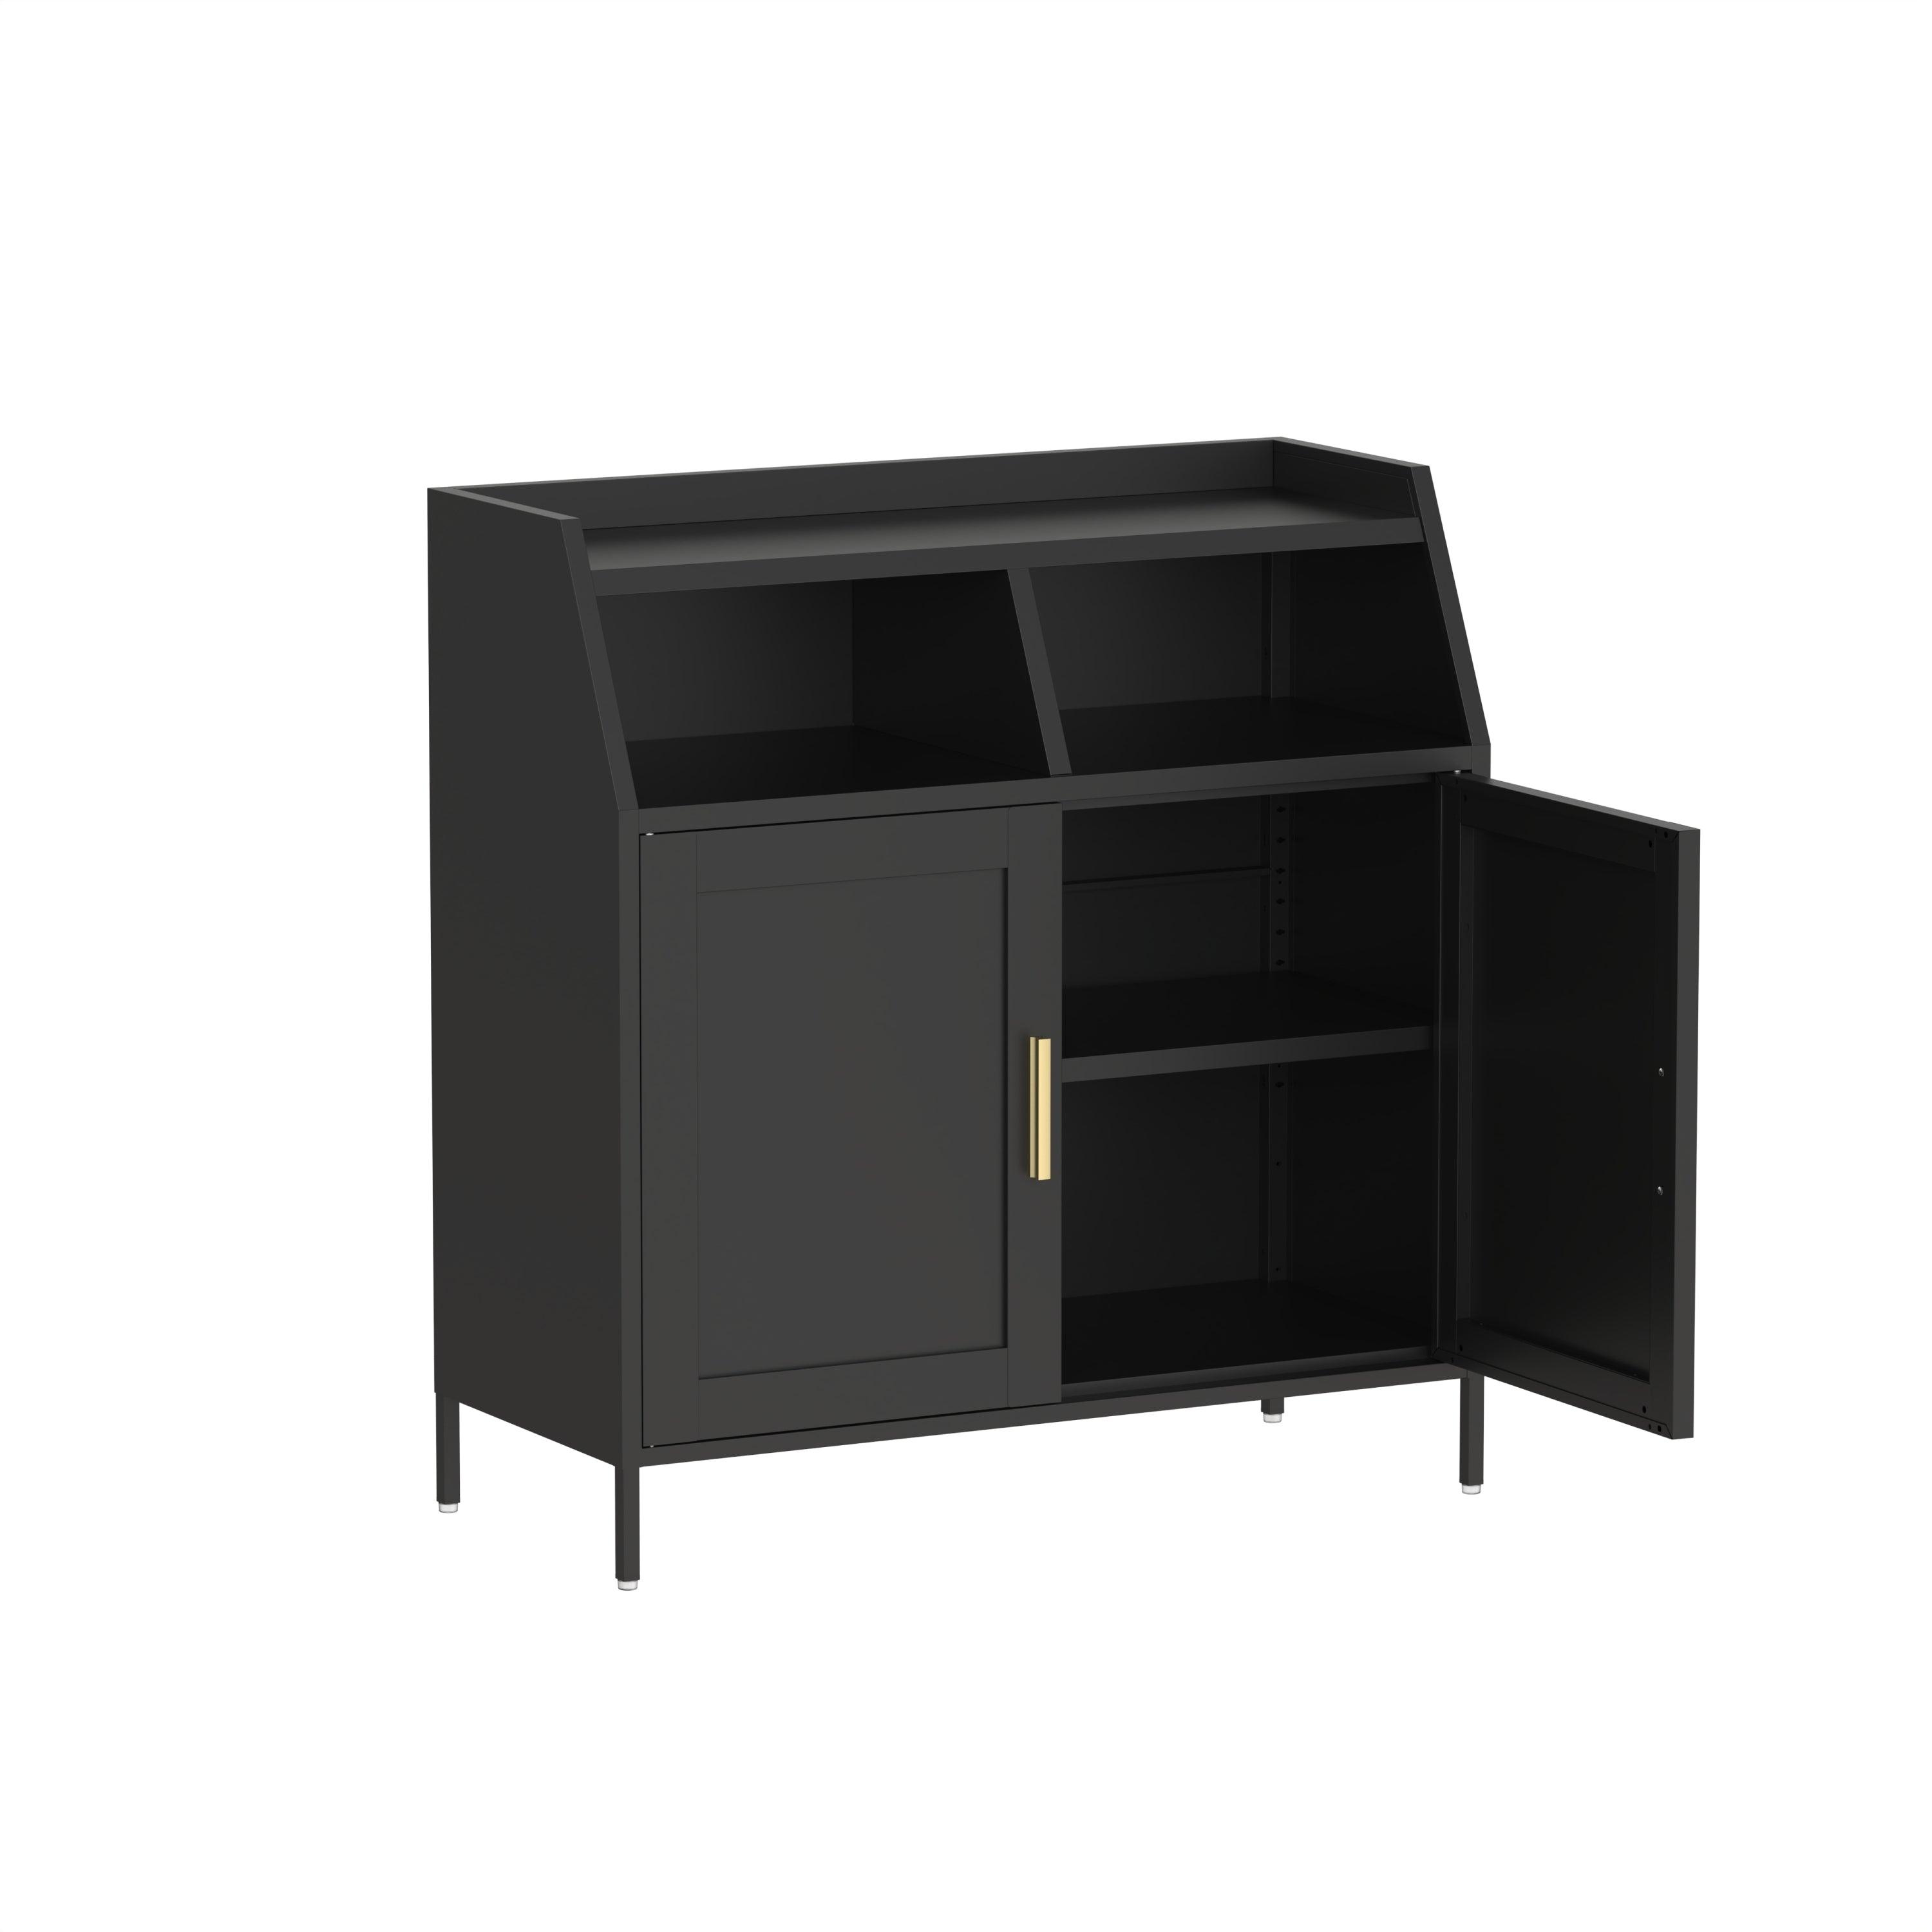 2 Door Metal Buffet Sideboard Cabinet With Shelf Storage - Black LamCham